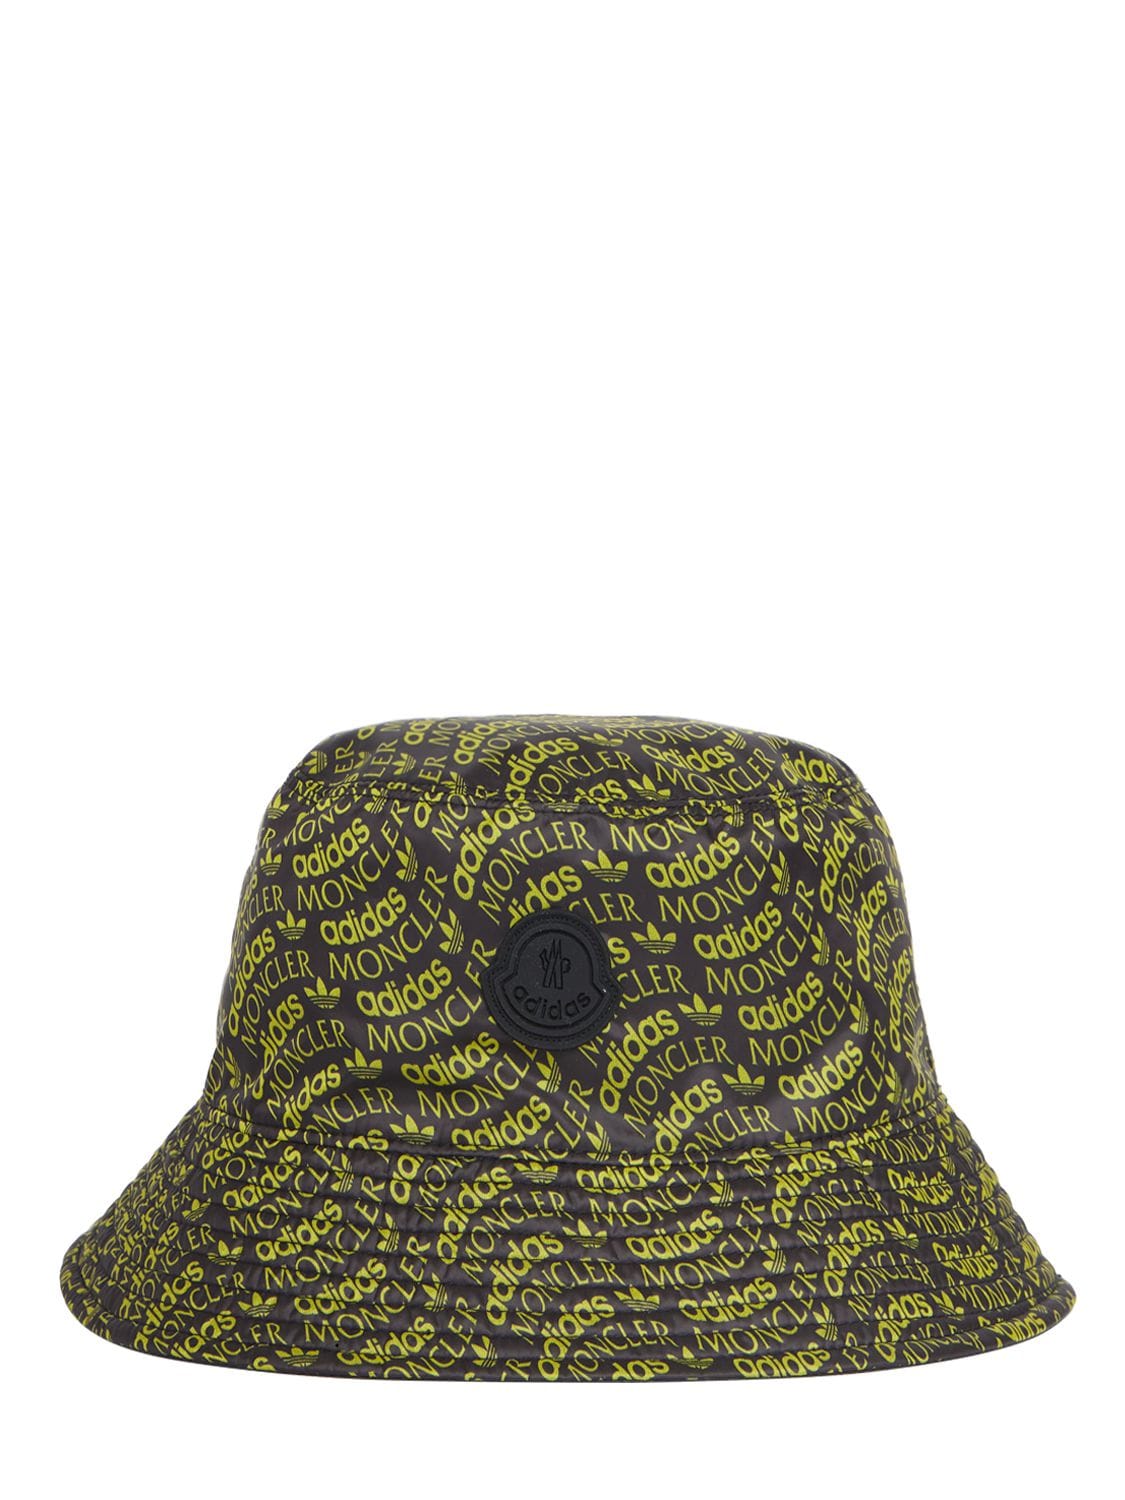 Moncler Genius Women's Moncler X Adidas Originals Bucket Hat In Black,yellow